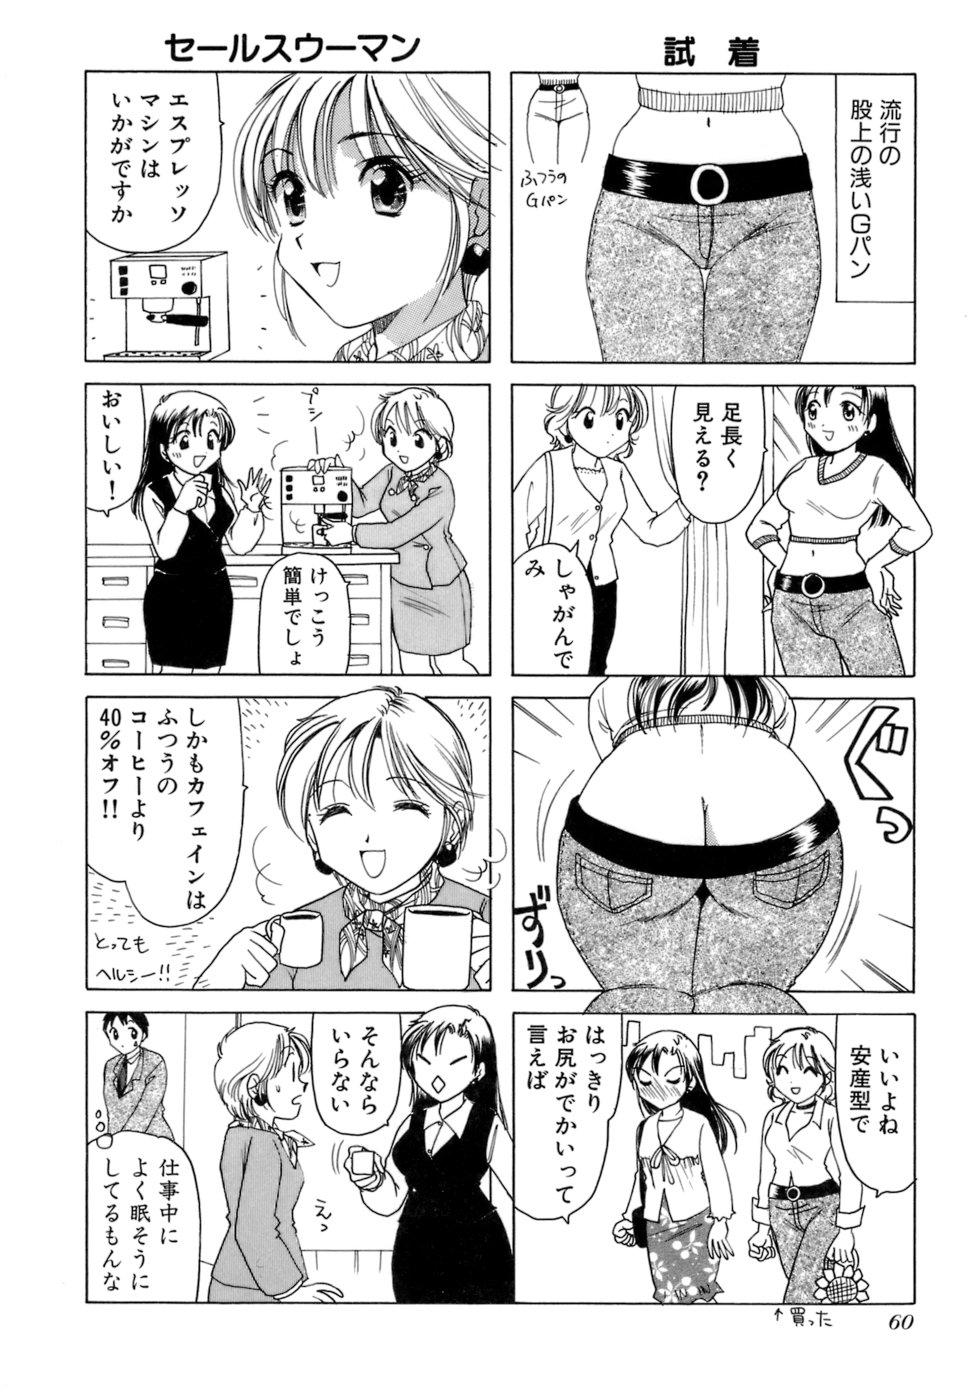 Eriko-kun, Ocha!! Vol.02 62